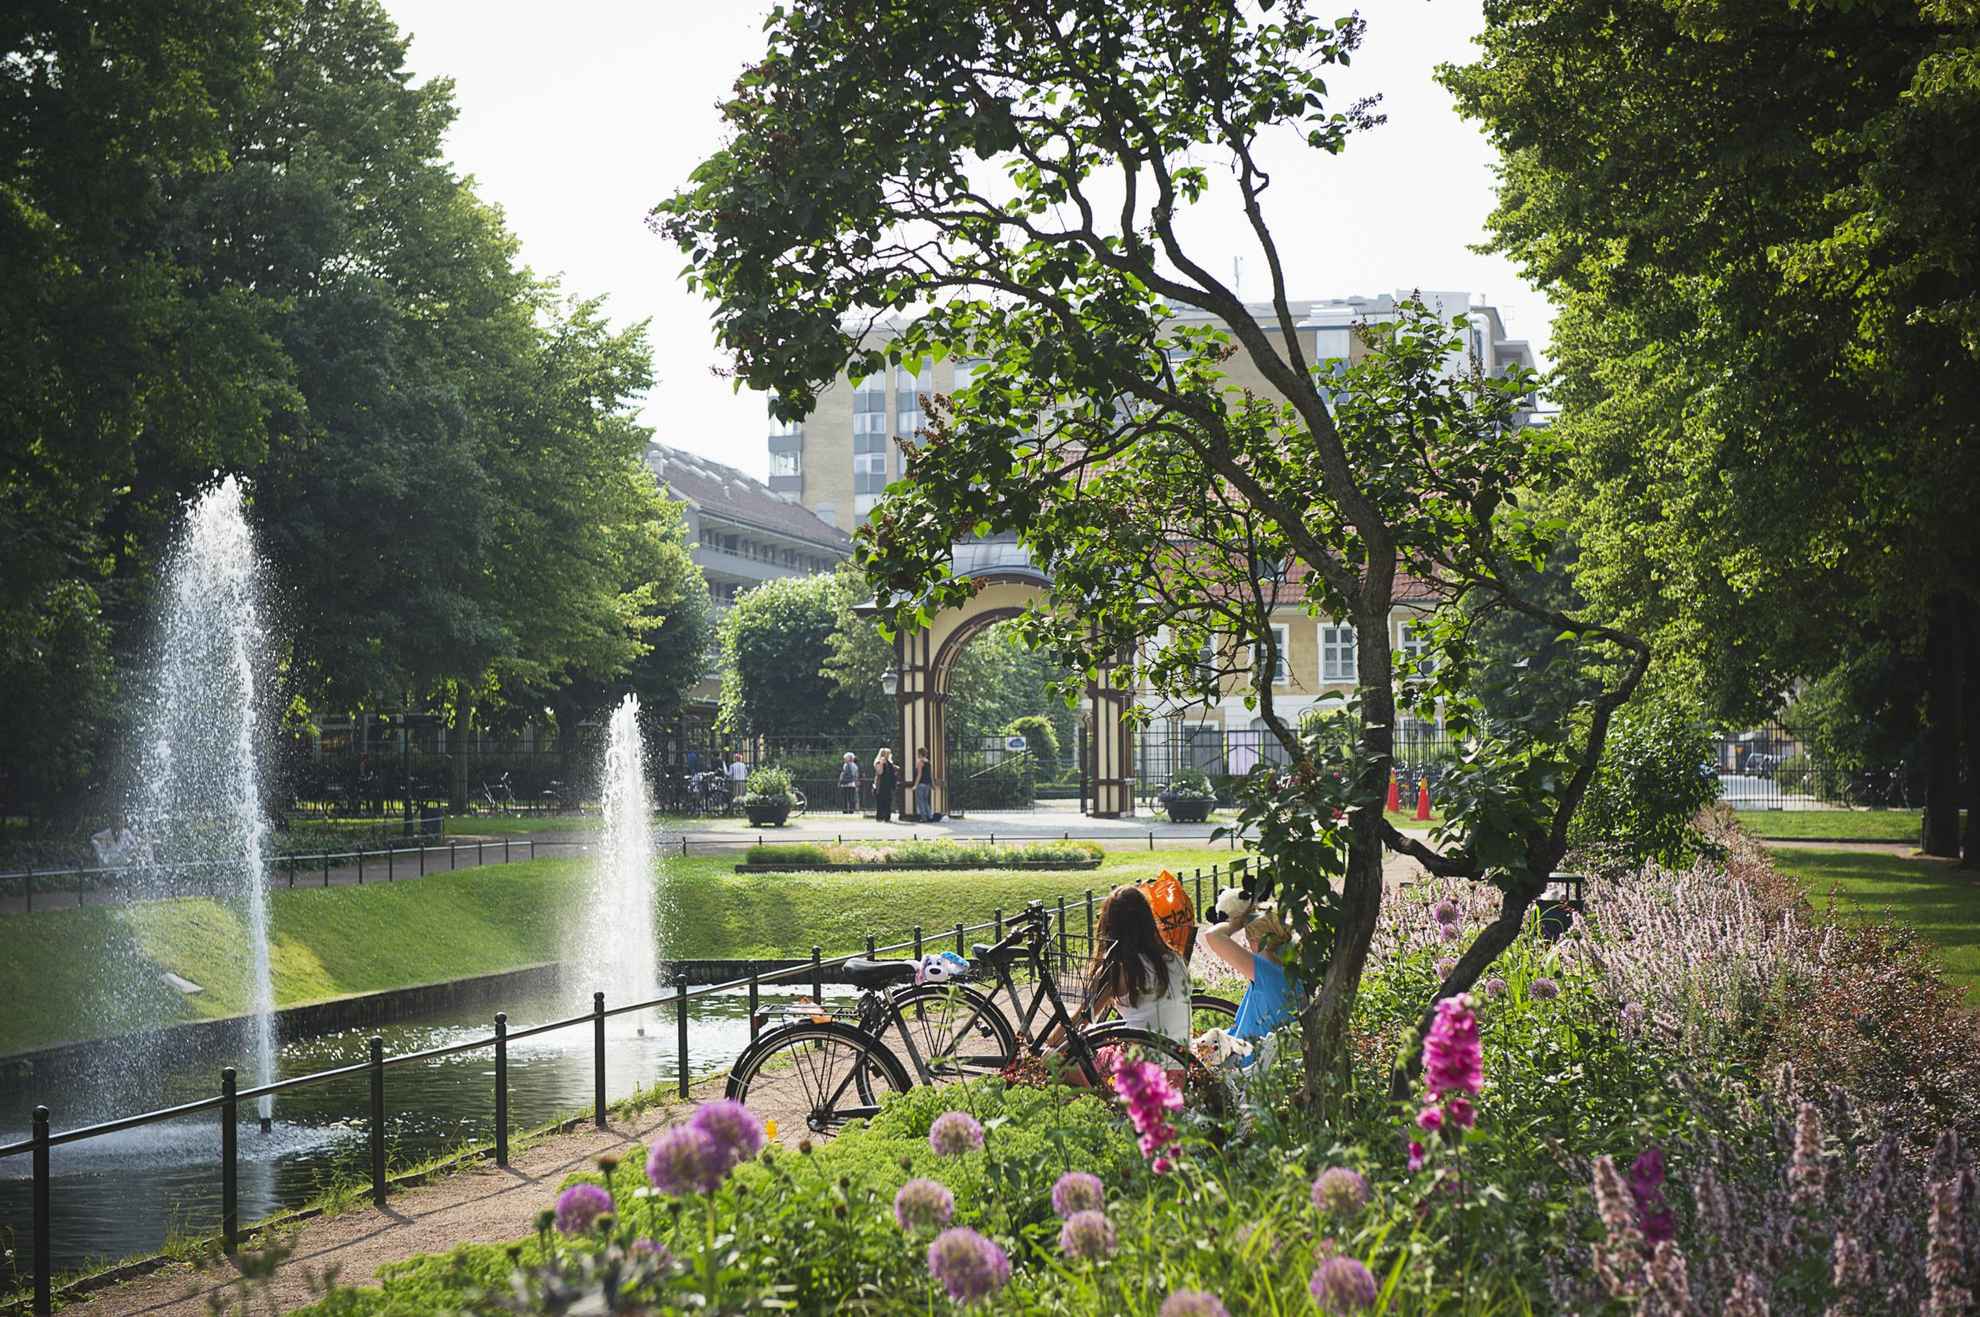 Bloemen en groen in een stadspark. Je ziet de rug van twee vrouwen zittend naast een vijver met twee fonteinen. Op de achtergrond zie je de ingang en enkele gebouwen buiten het park.